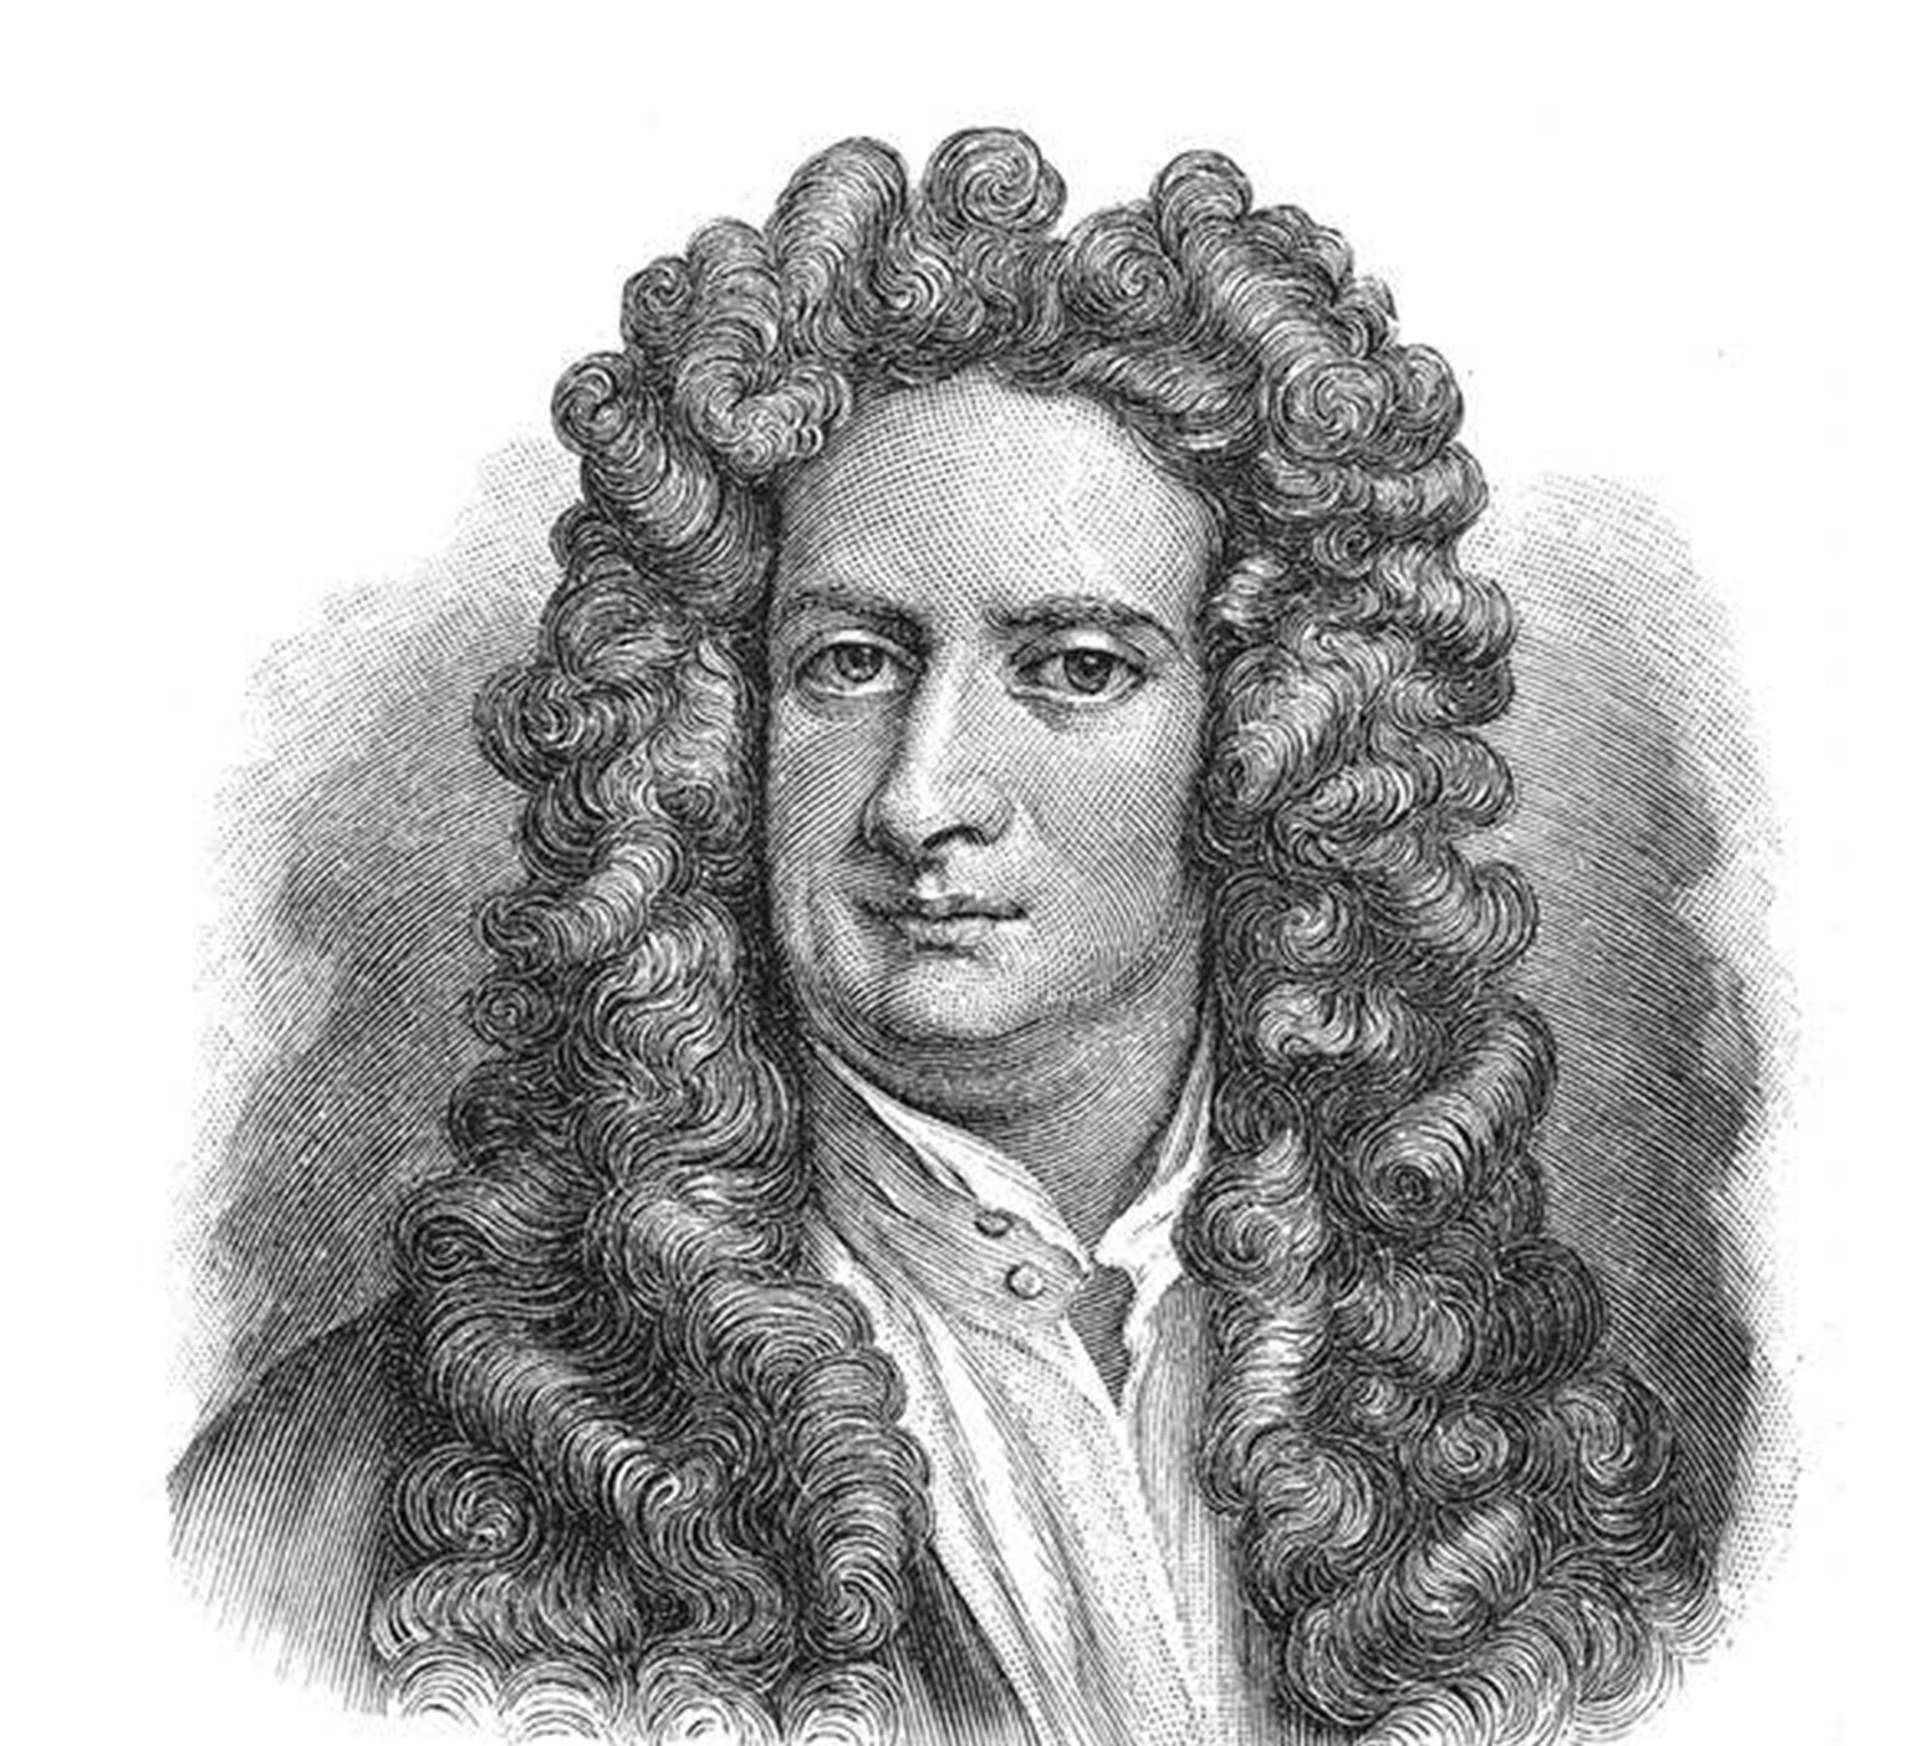 近代物理学之父牛顿,怎样专研知识,终成为百科全书式的全才